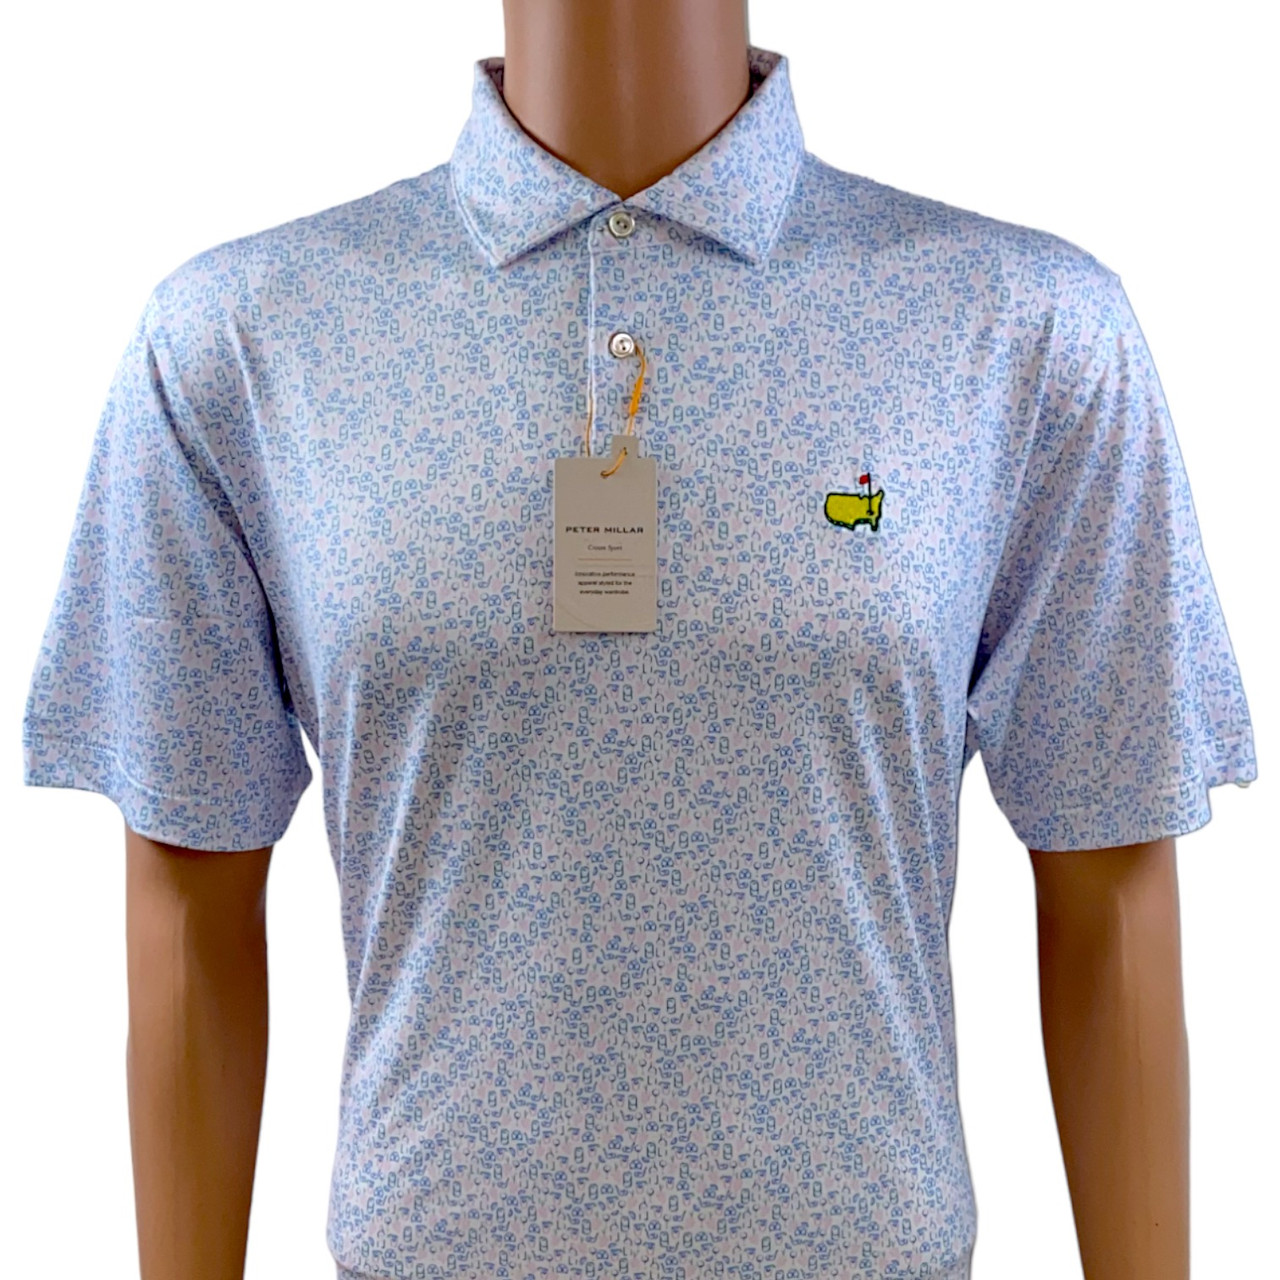 Angler's Technical Polo Shirt